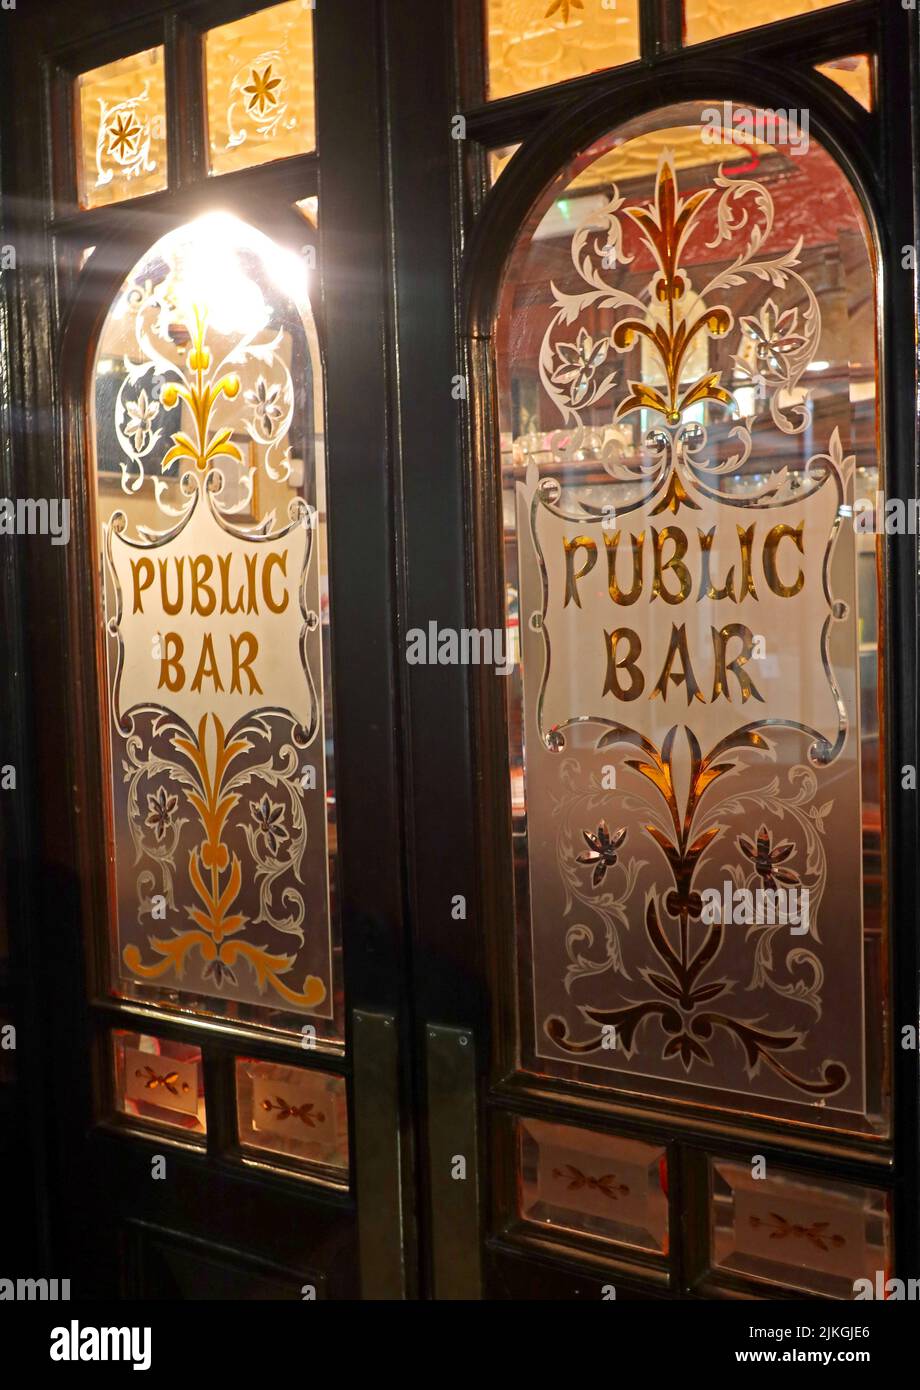 The Red Lion Mayfair, portes du bar public et bar public, 2 Duke of York St, St. James's, Londres, Angleterre, Royaume-Uni, SW1Y 6JP Banque D'Images